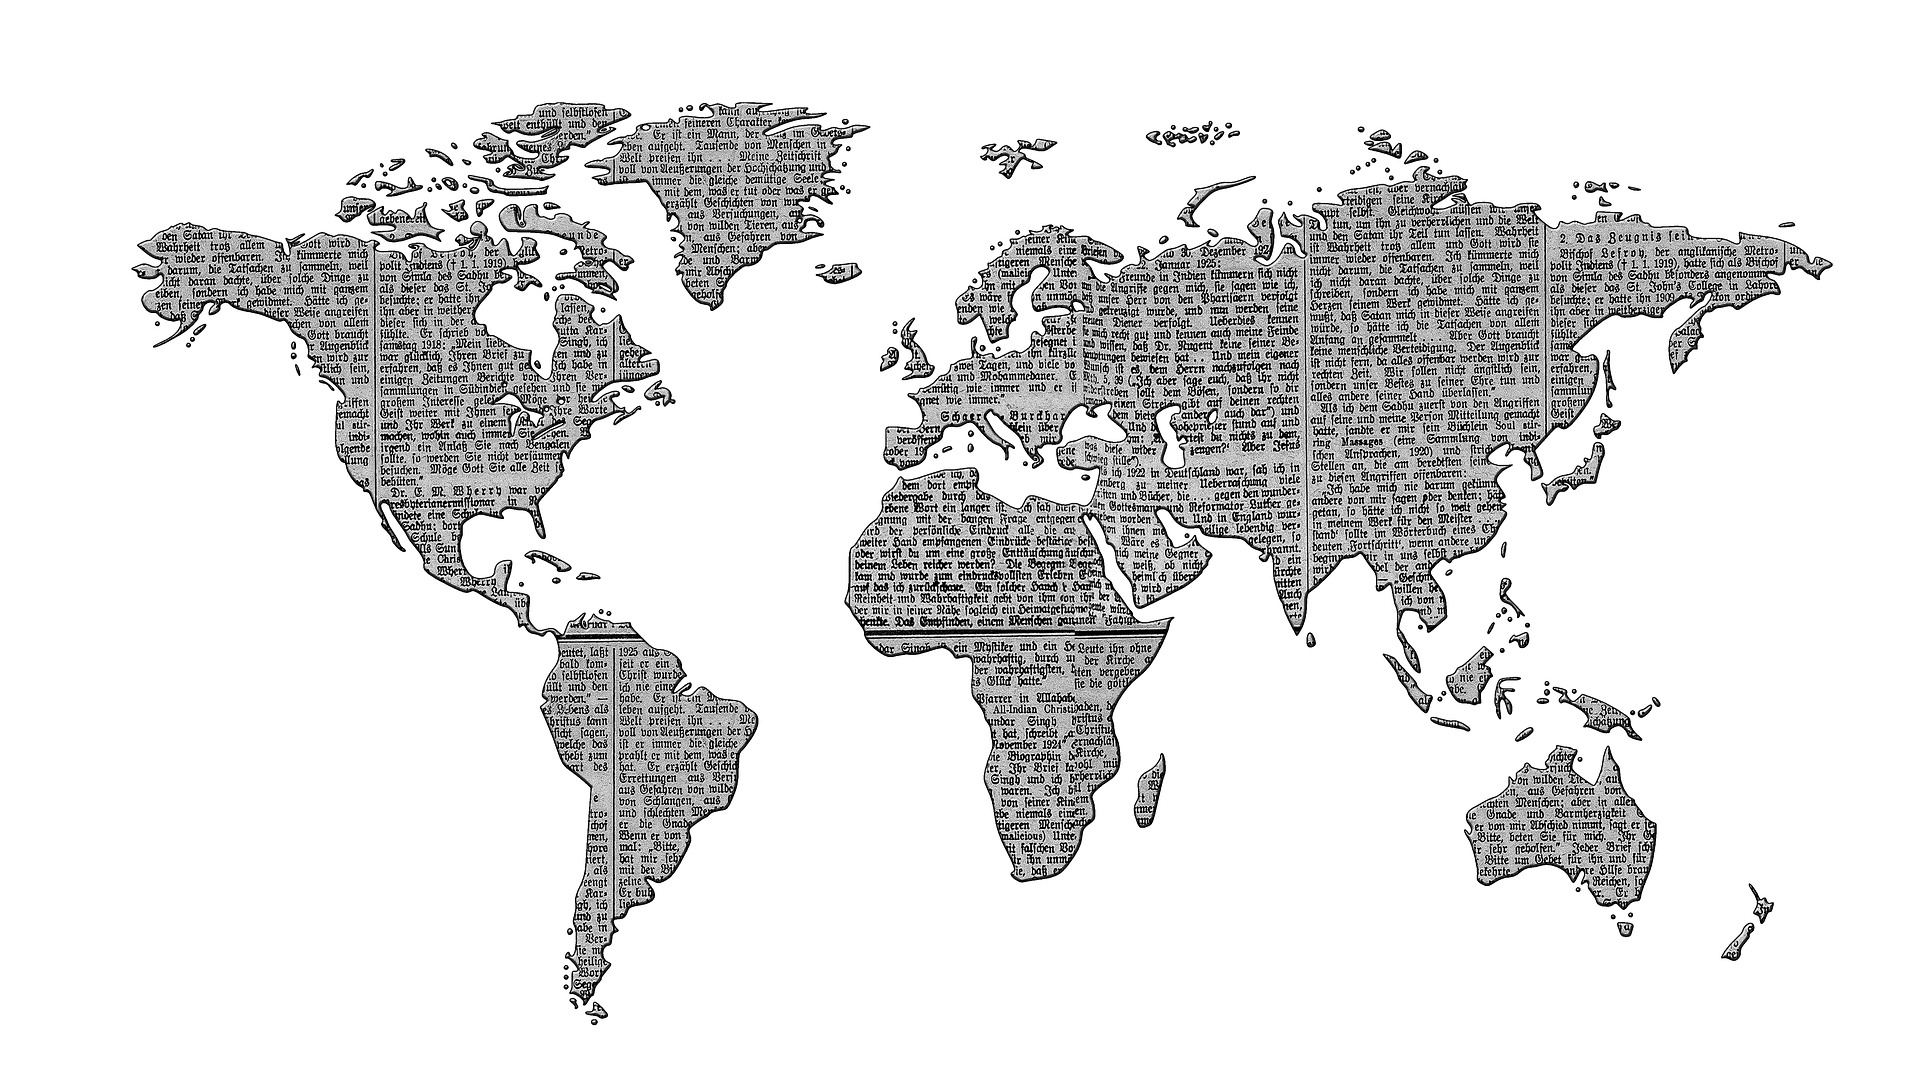 Kachel Presse - Eine Weltkarte im Design einer Zeitung